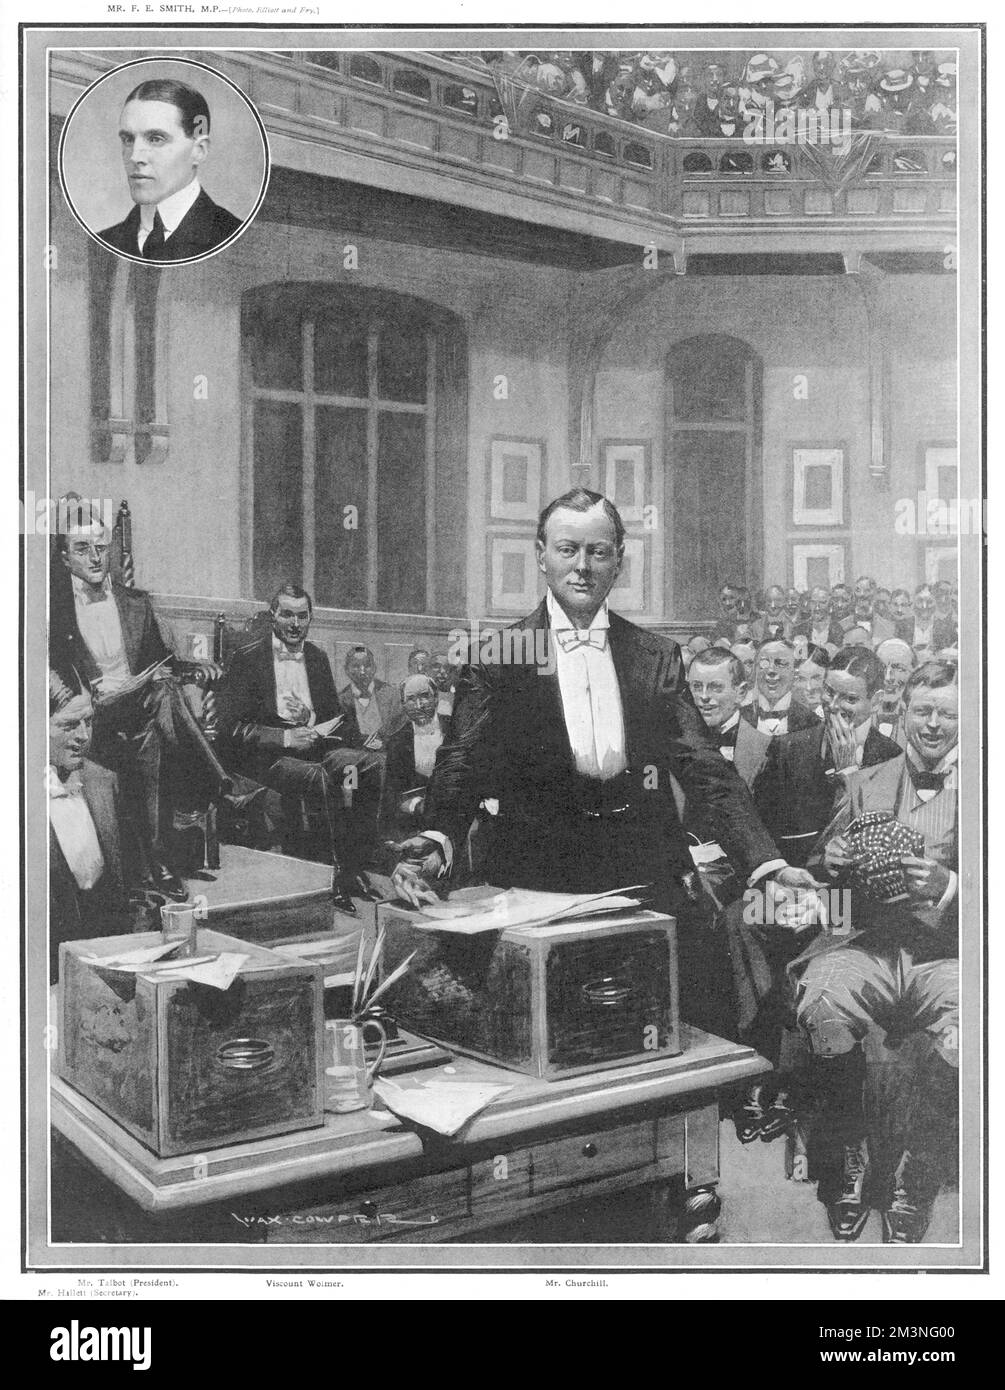 M. Winston Churchill, sous-secrétaire d'État pour les colonies, répond à F.E Smith (M.P pour Walton) lors d'un débat à l'Union d'Oxford sur 1 mars 1907. Le sujet du débat était "que, de l'avis de la Chambre, le gouvernement actuel est indigne de la confiance du pays". M. Hallett (secrétaire) est assis à l'extrême gauche, avec M. Talbot (président) sur la tribune soulevée, et le vicomte Wolmer sur la chaise à sa gauche. Date: 1907 Banque D'Images